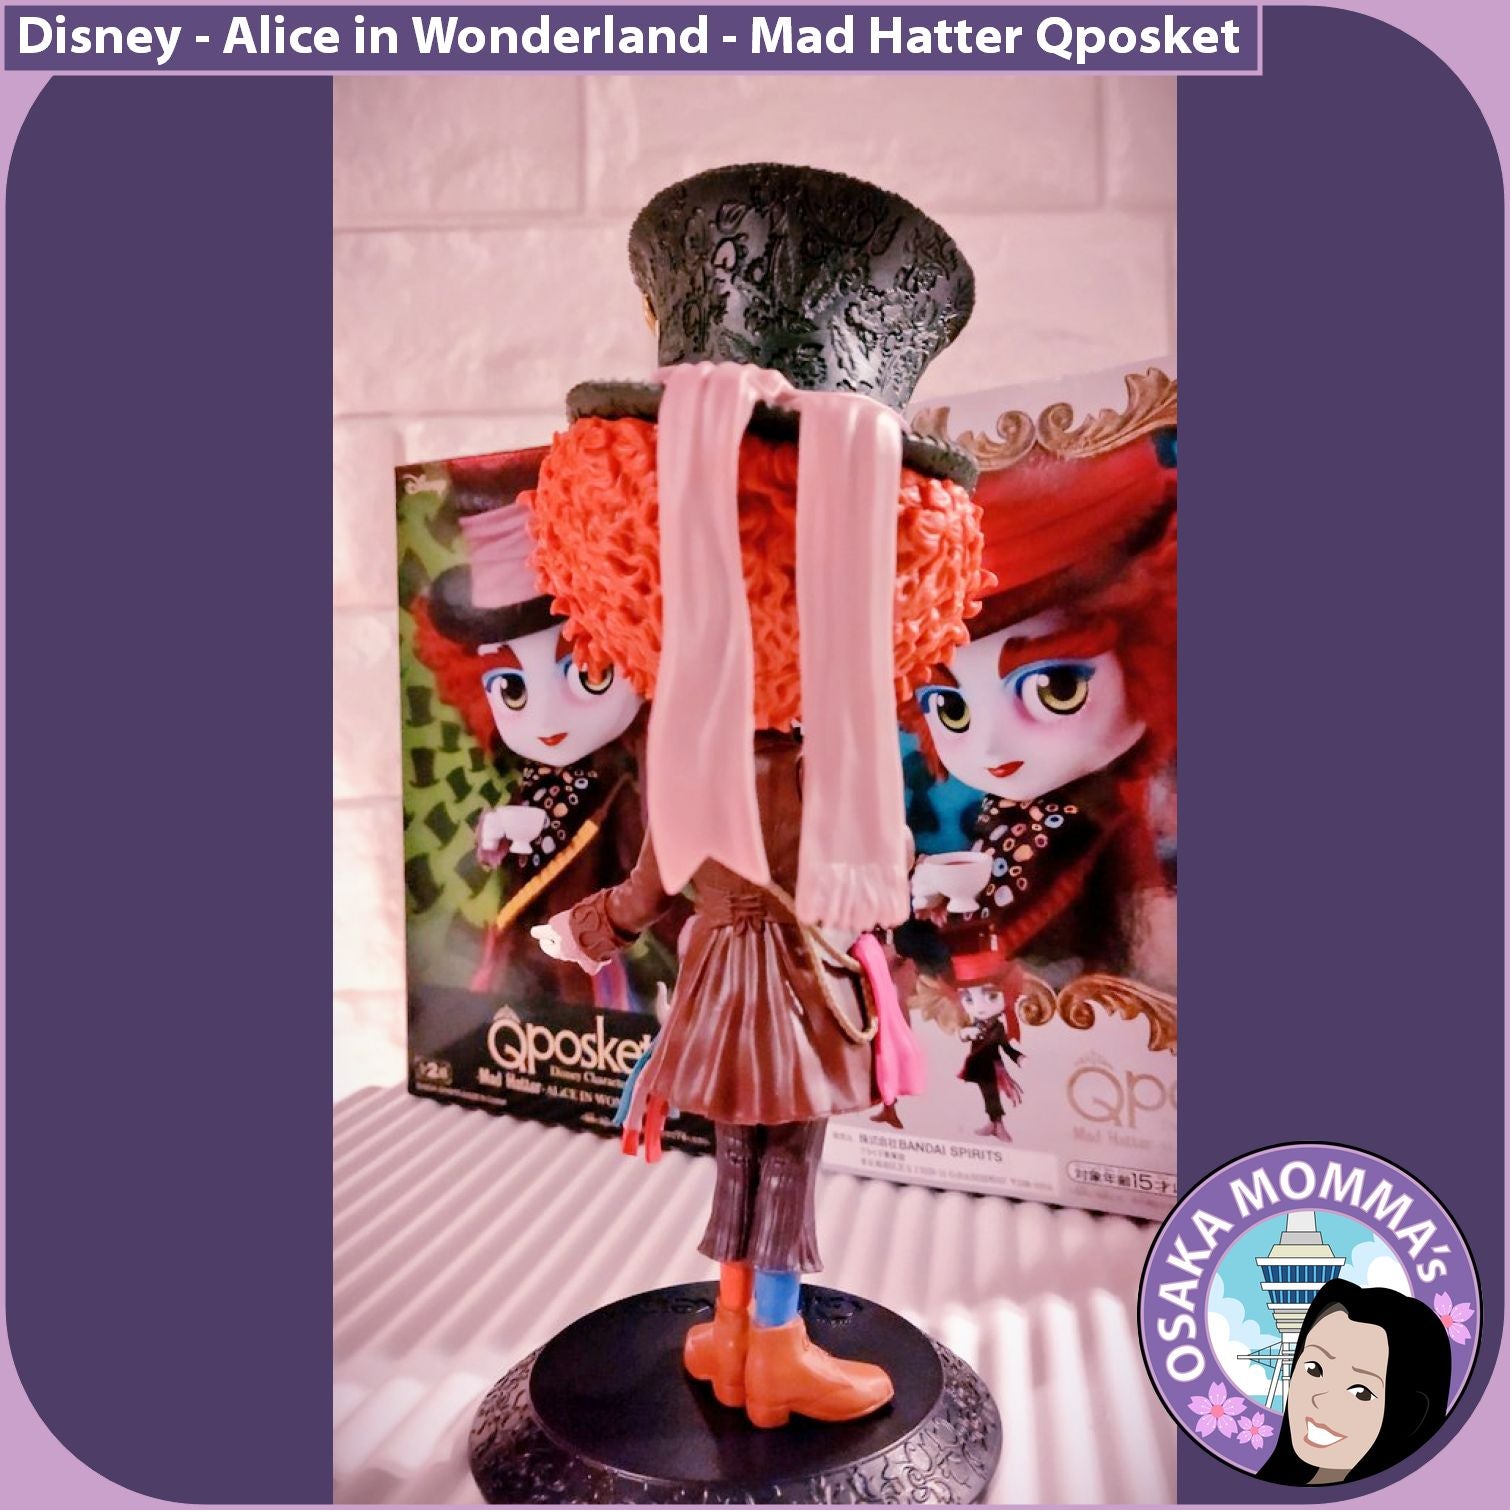 Mad Hatter Qposket – Osaka Momma's Japanese Goods